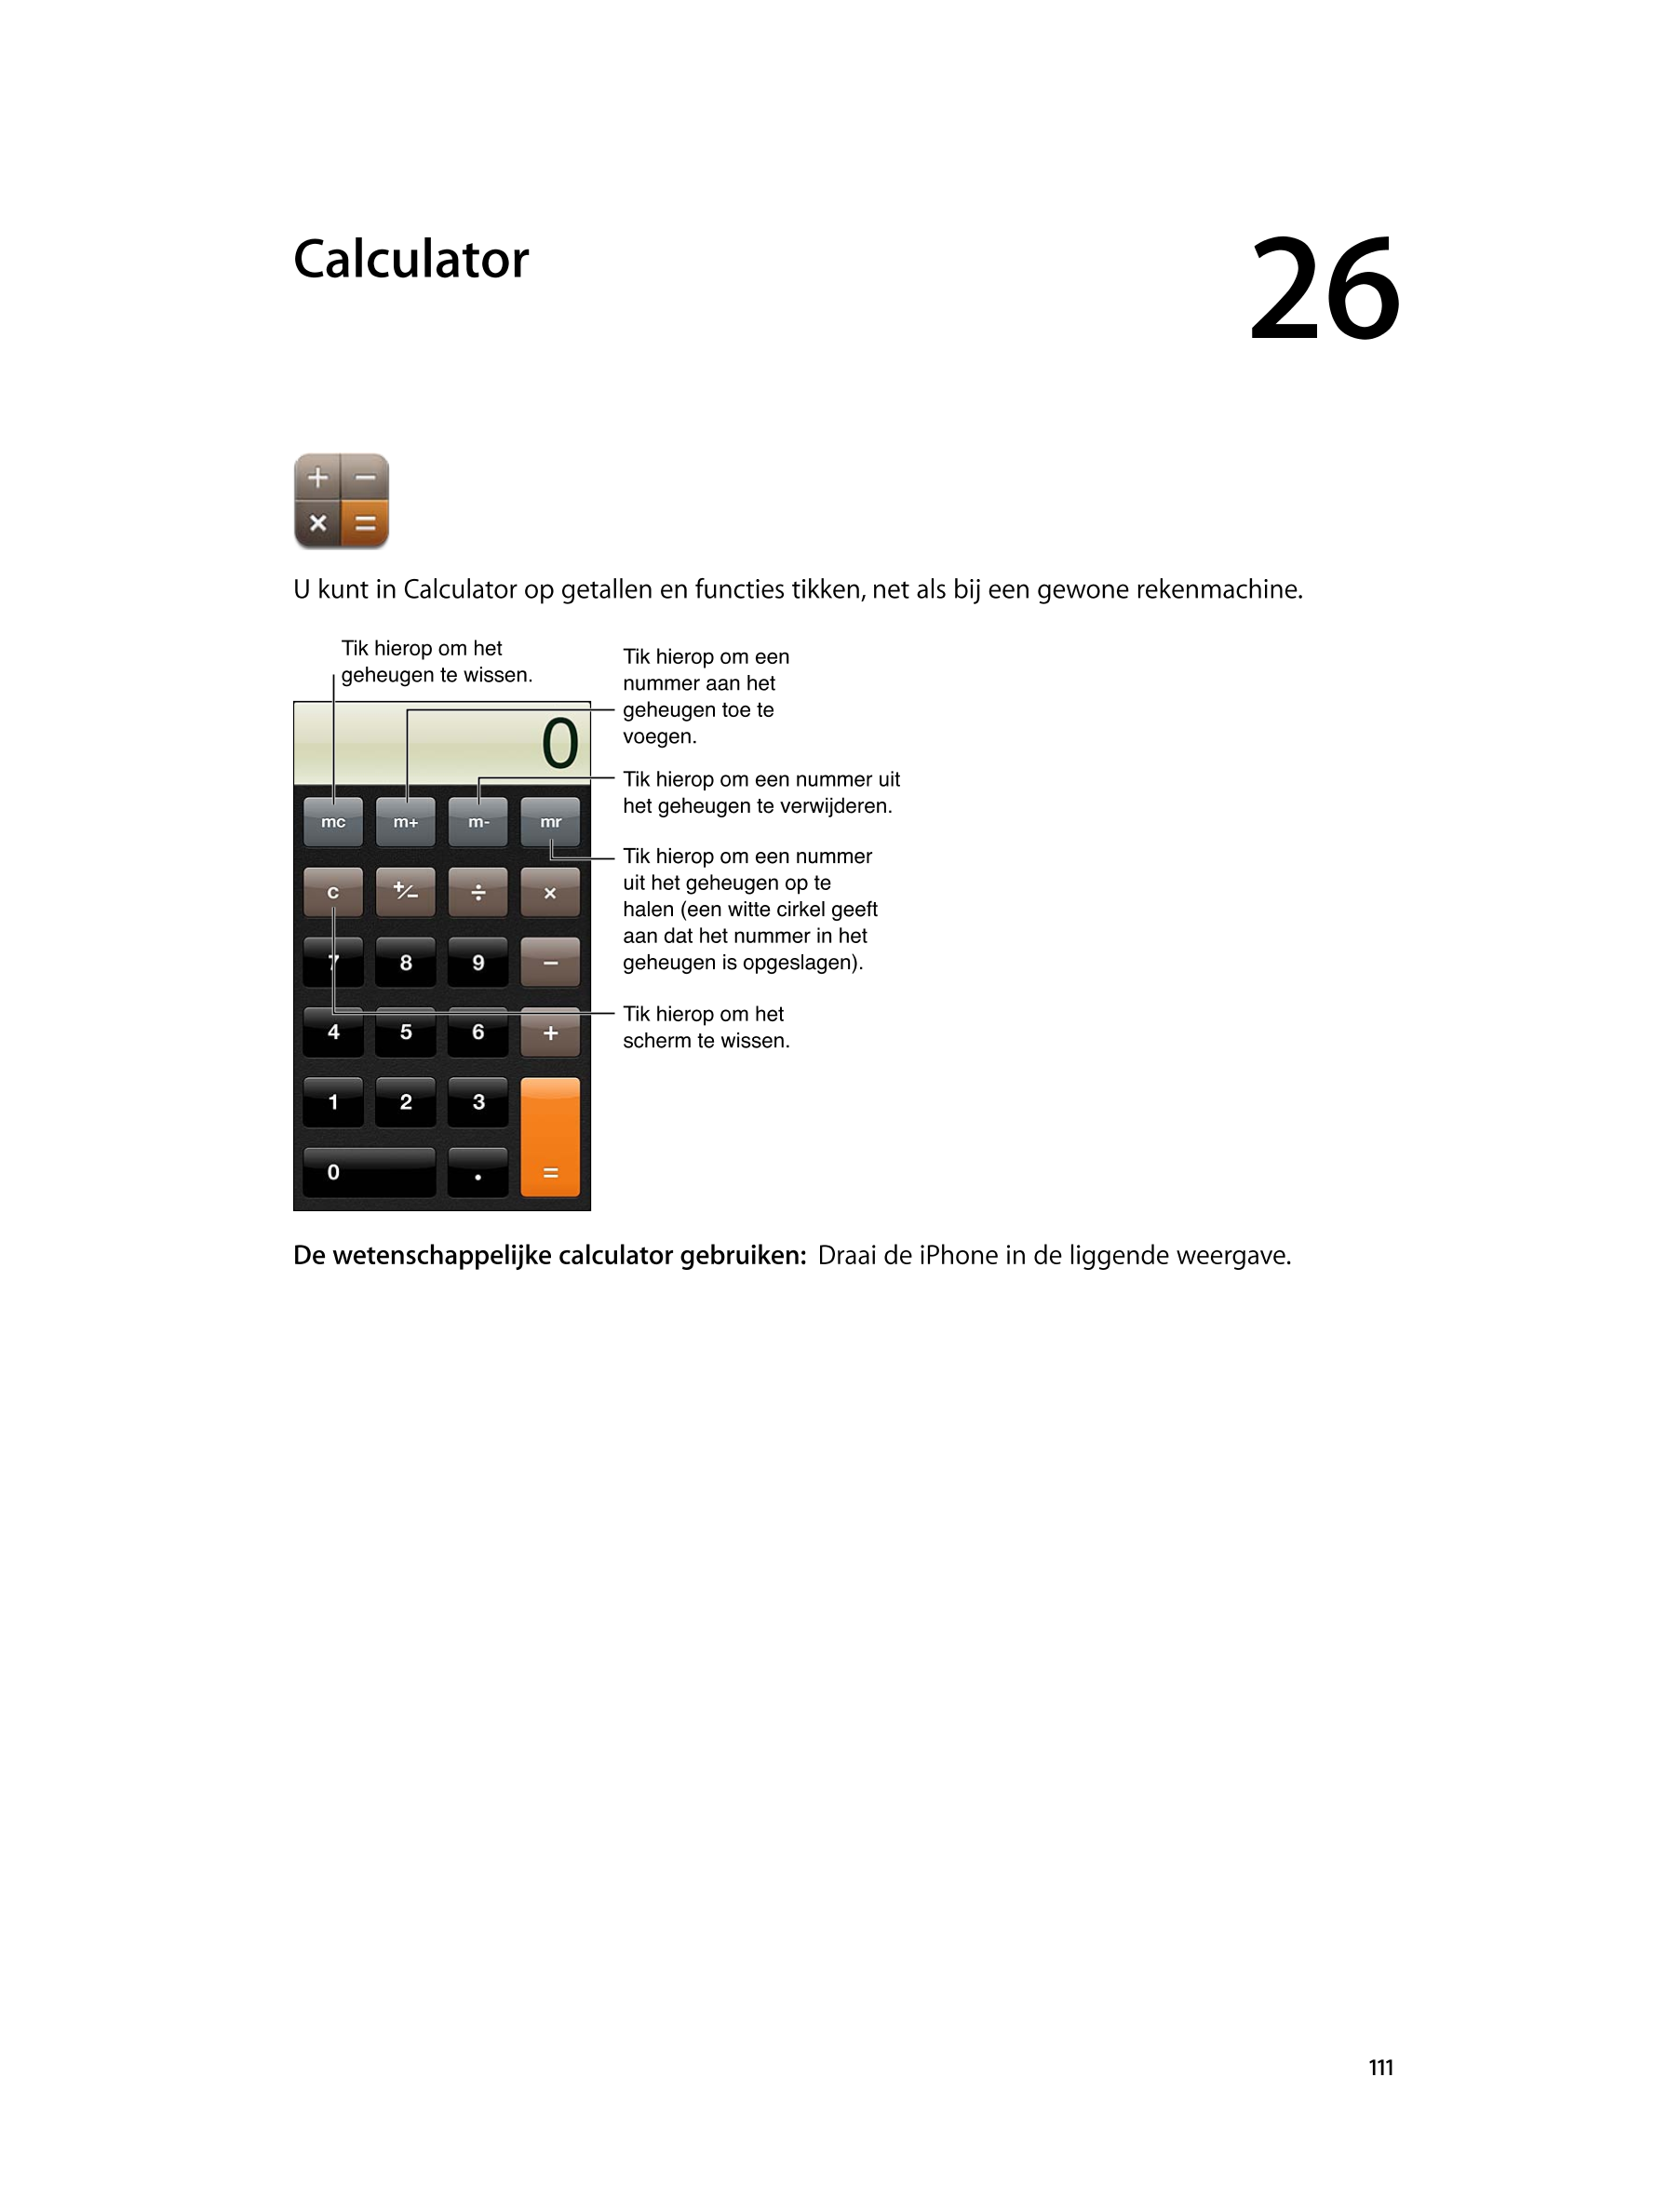   Calculator 26
U kunt in Calculator op getallen en functies tikken, net als bij een gewone rekenmachine.
Tik hierop om het  Tik